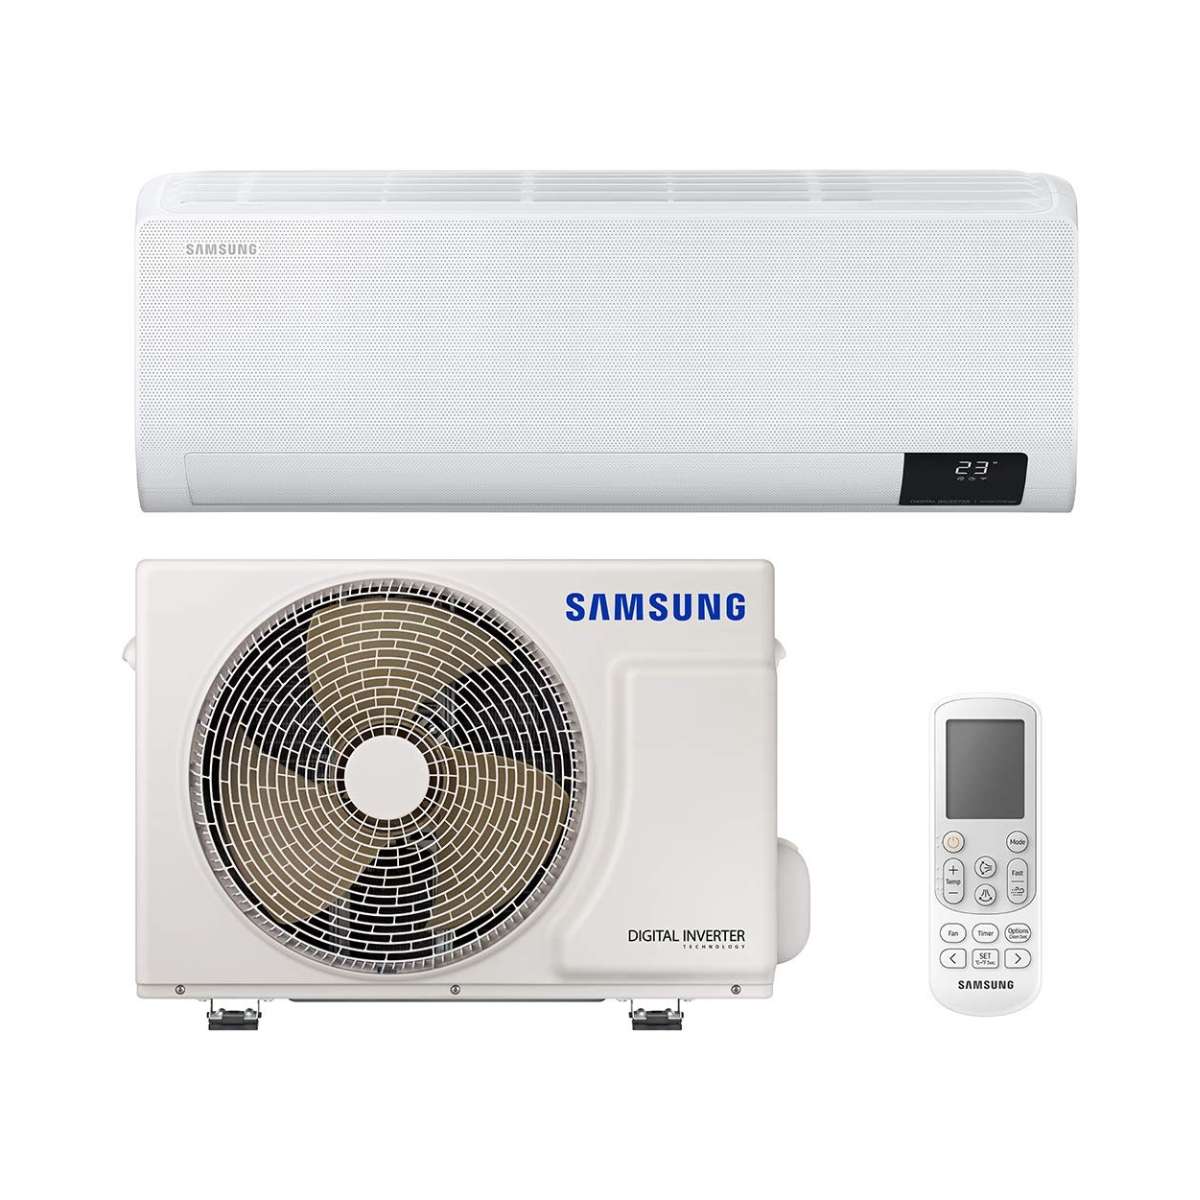 Split klimaanlage Samsung Wind Free Comfort F-AR24NXT 6,5kW 22000 BTU mit der Referenz F-AR24NXT von der Marke SAMSUNG